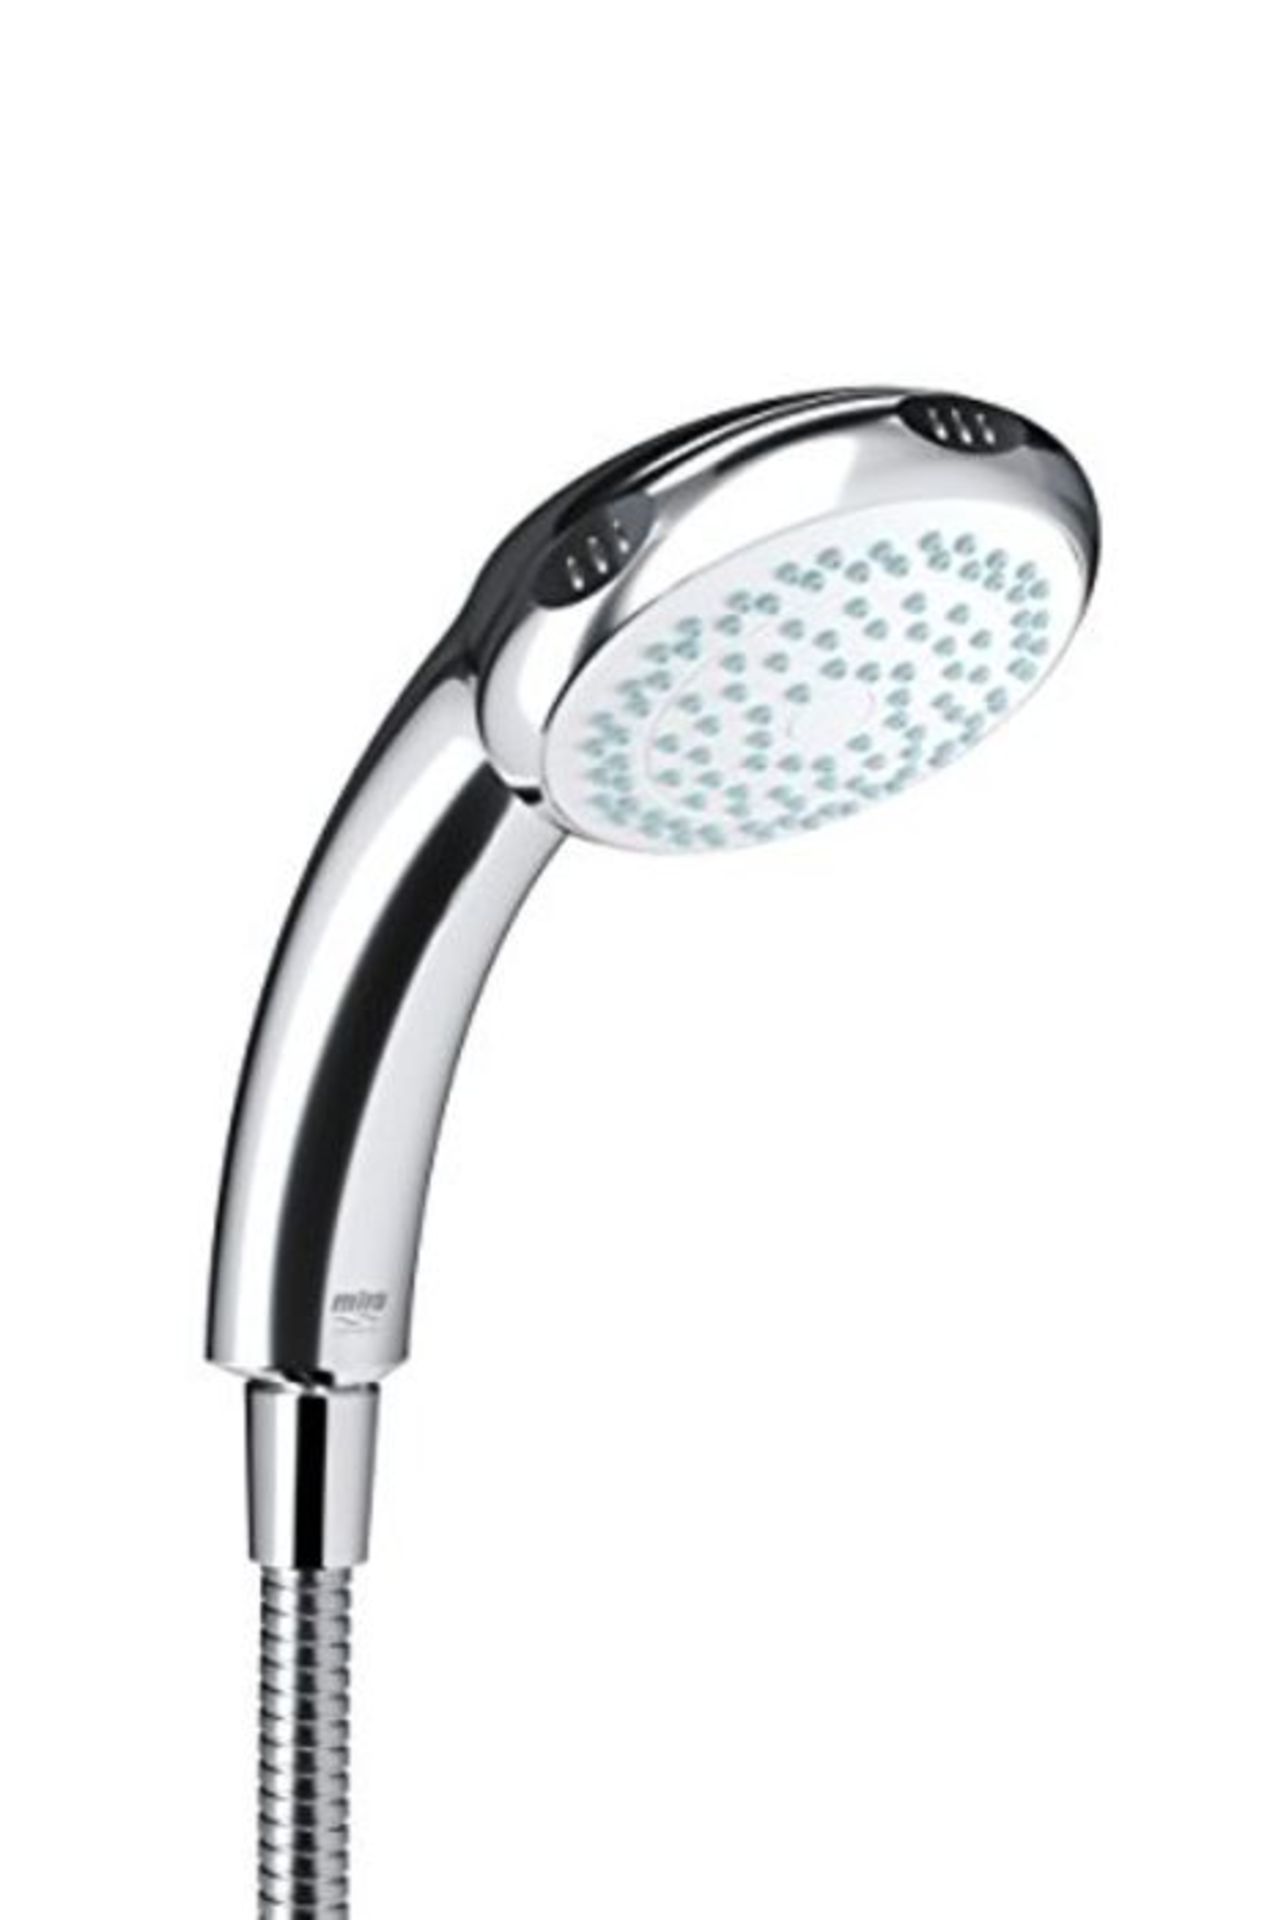 M�i�r�a� �S�h�o�w�e�r�s� �2�.�1�6�0�5�.�1�7�6� �L�o�g�i�c� �4�-�S�p�r�a�y� �S�h�o�w�e�r� �H�e�a�d� �